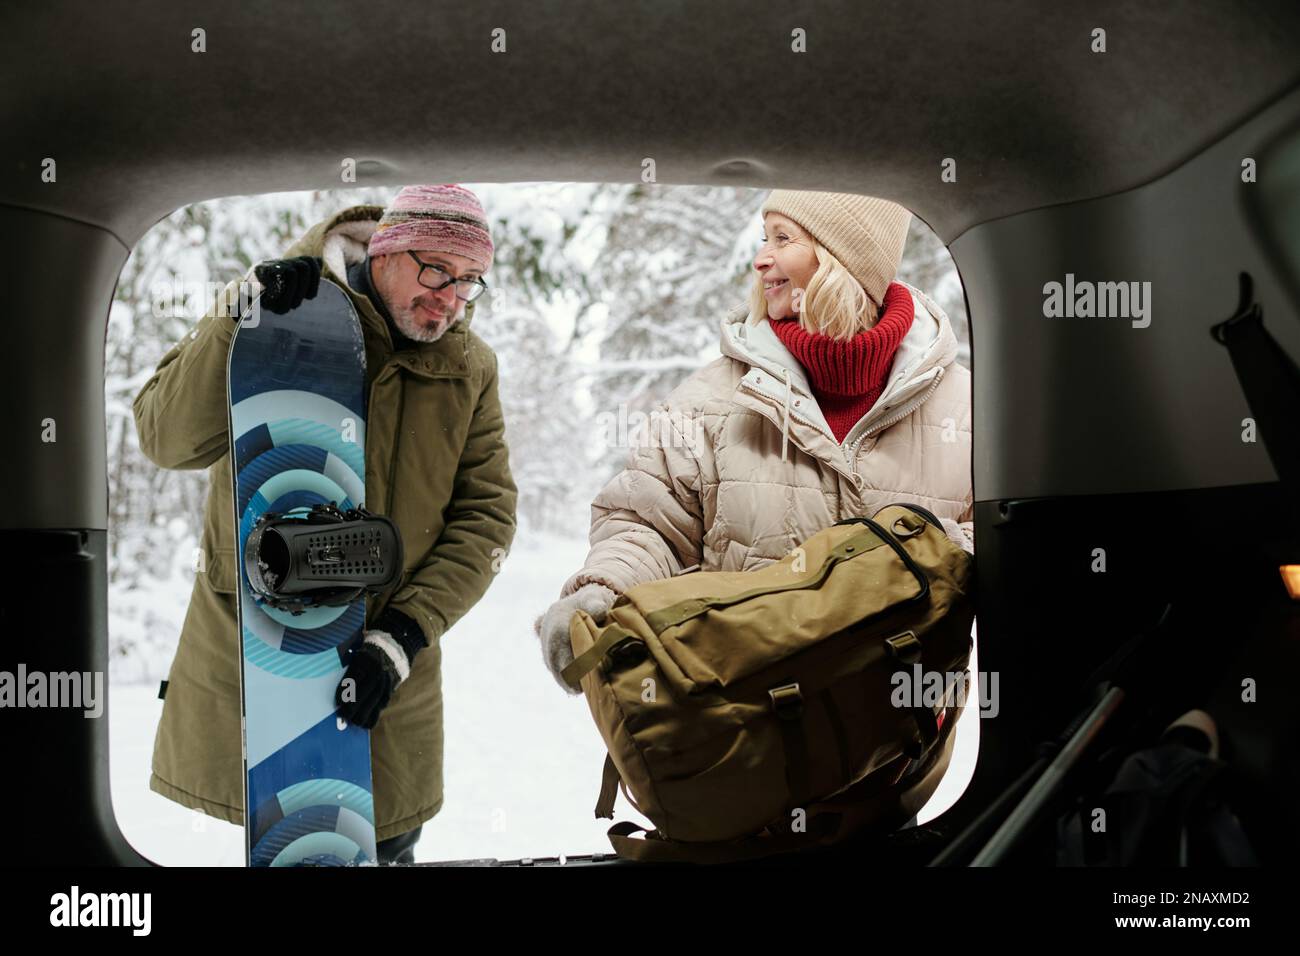 Glückliche blonde Frau mit Rucksack, die neben ihrem Mann mit Snowboard am offenen Kofferraum stand, während beide ihre Winterreise genossen Stockfoto